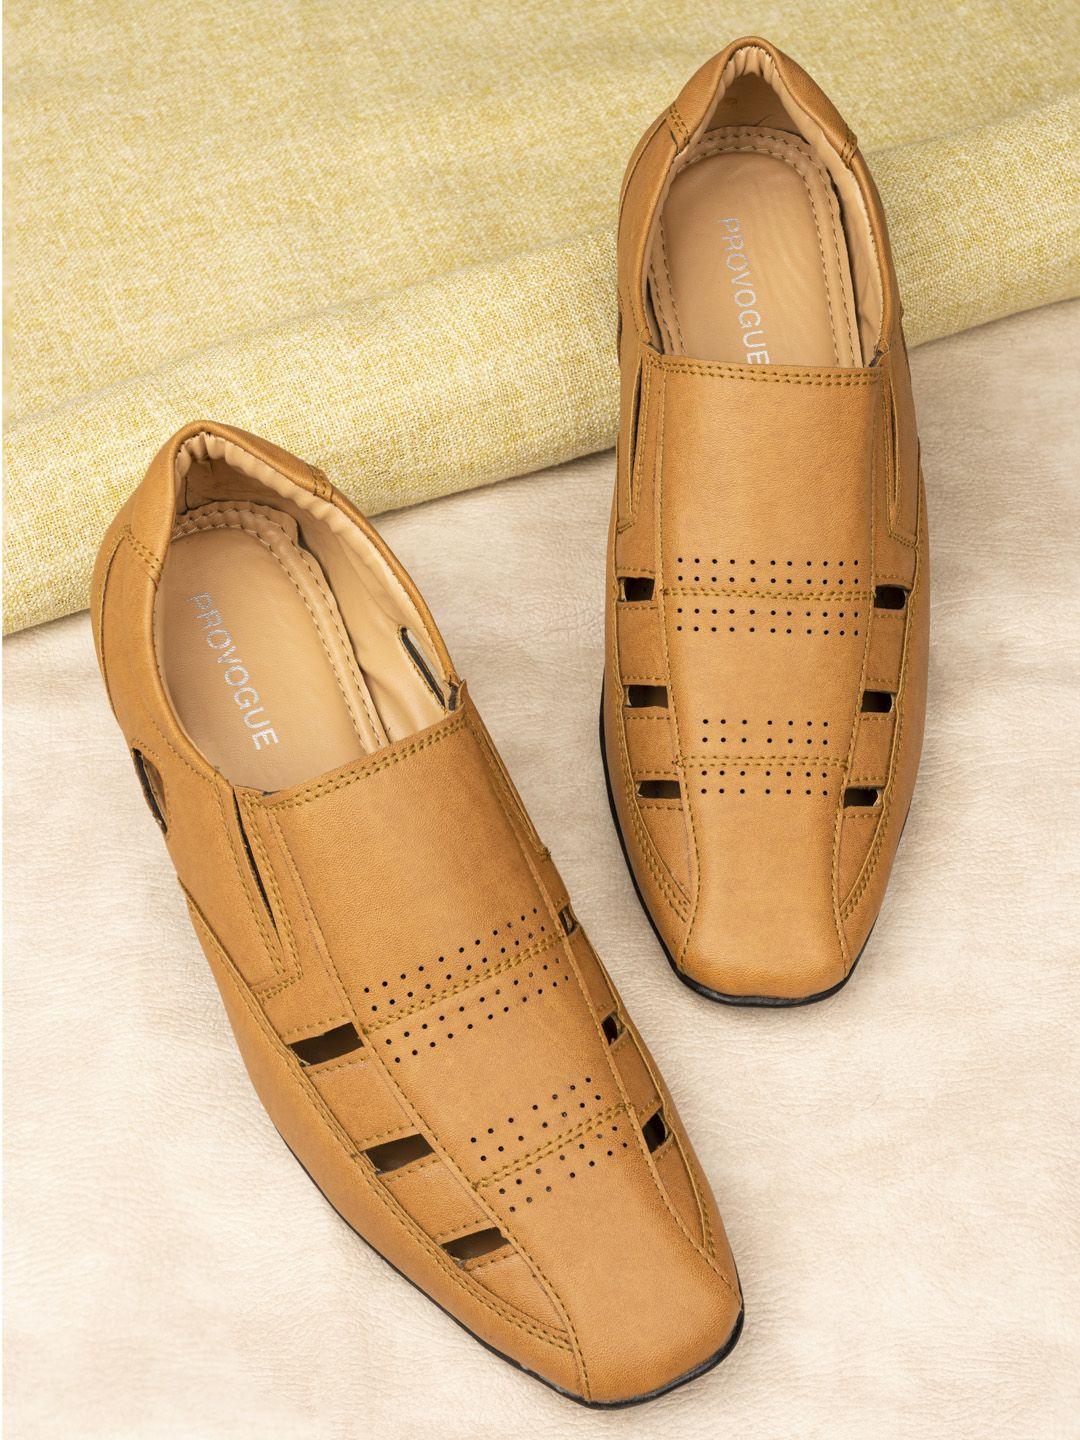 provogue-men-tan-brown-shoe-style-sandals